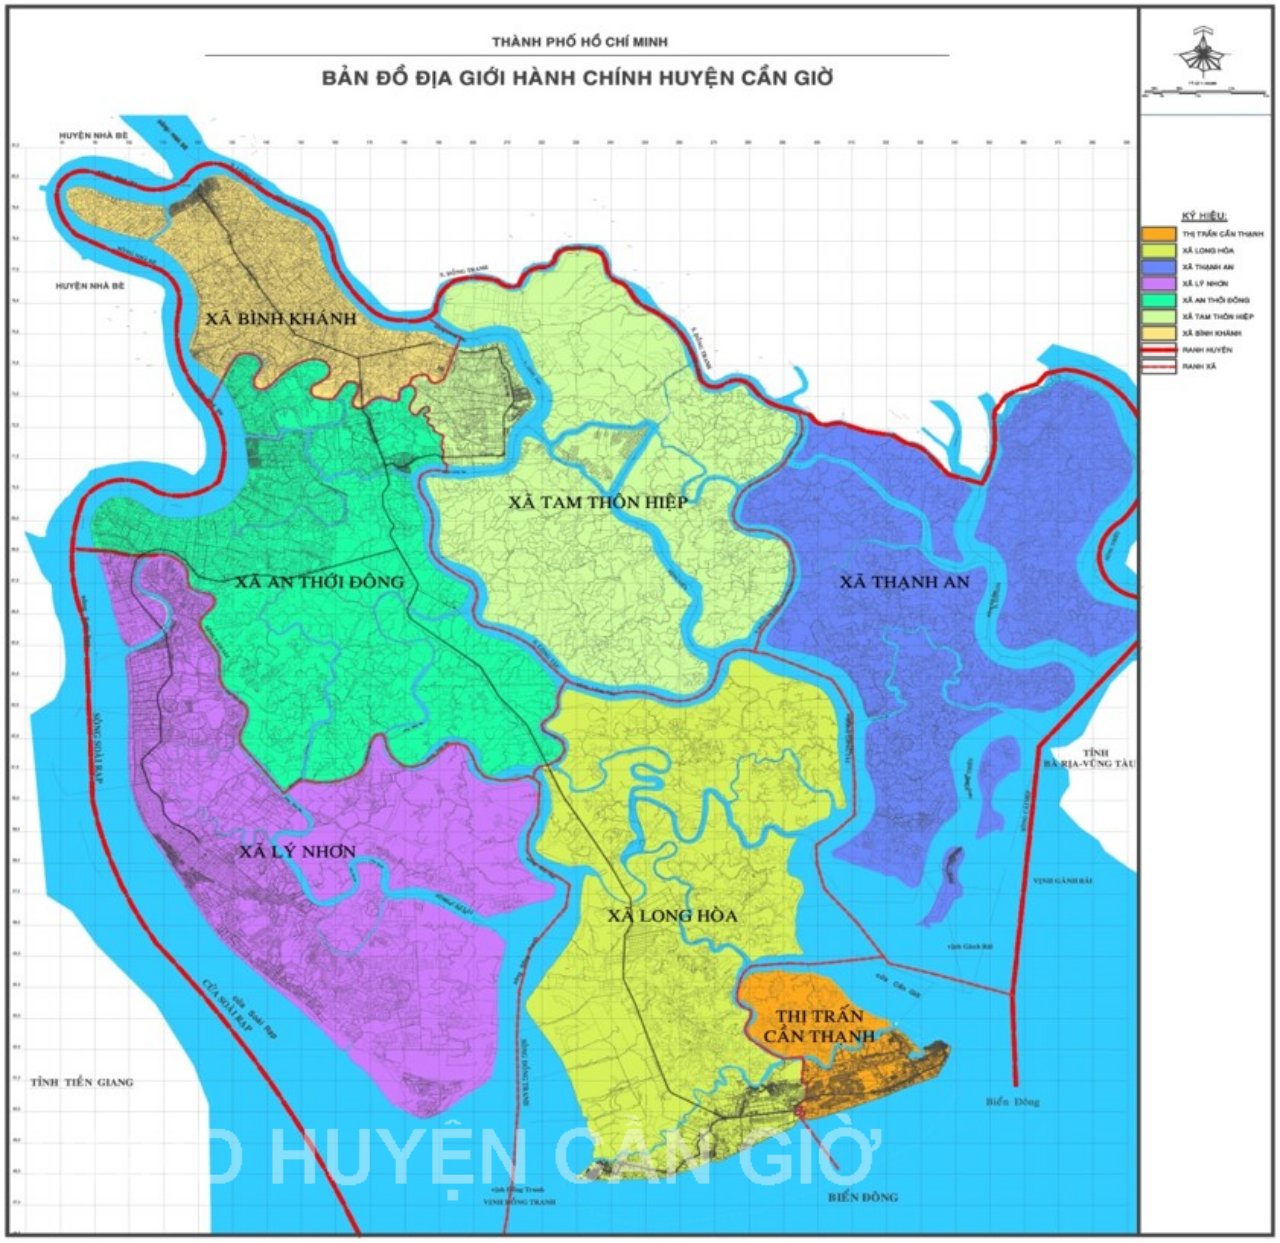 Bản đồ địa giới huyện Cần Giờ khổ lớn năm 2021